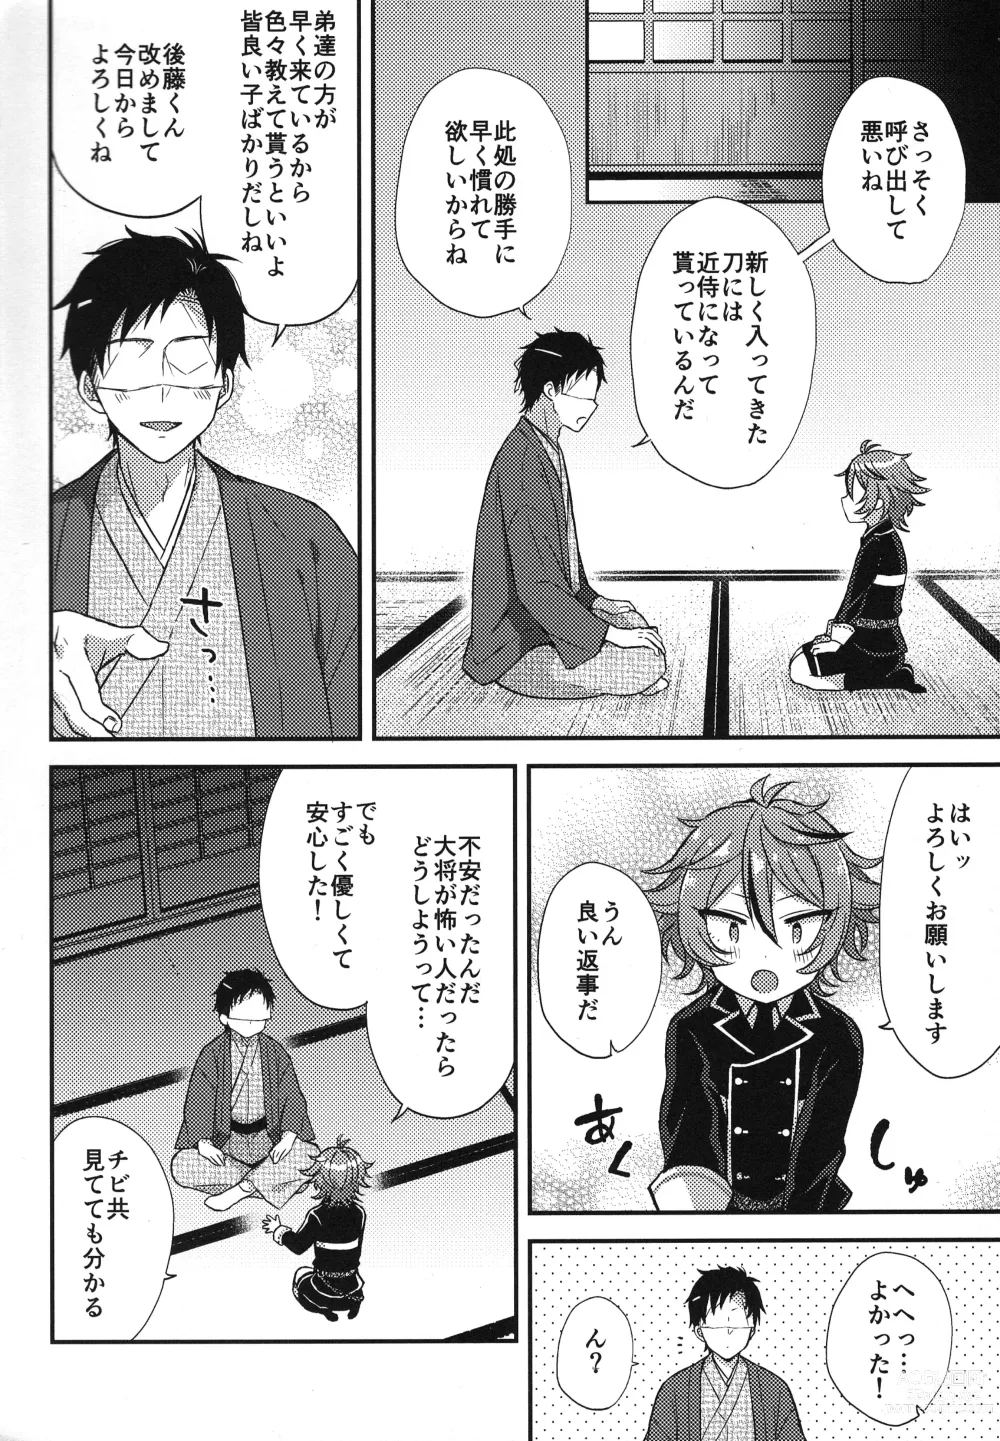 Page 7 of doujinshi Sanigoto Sairoku!